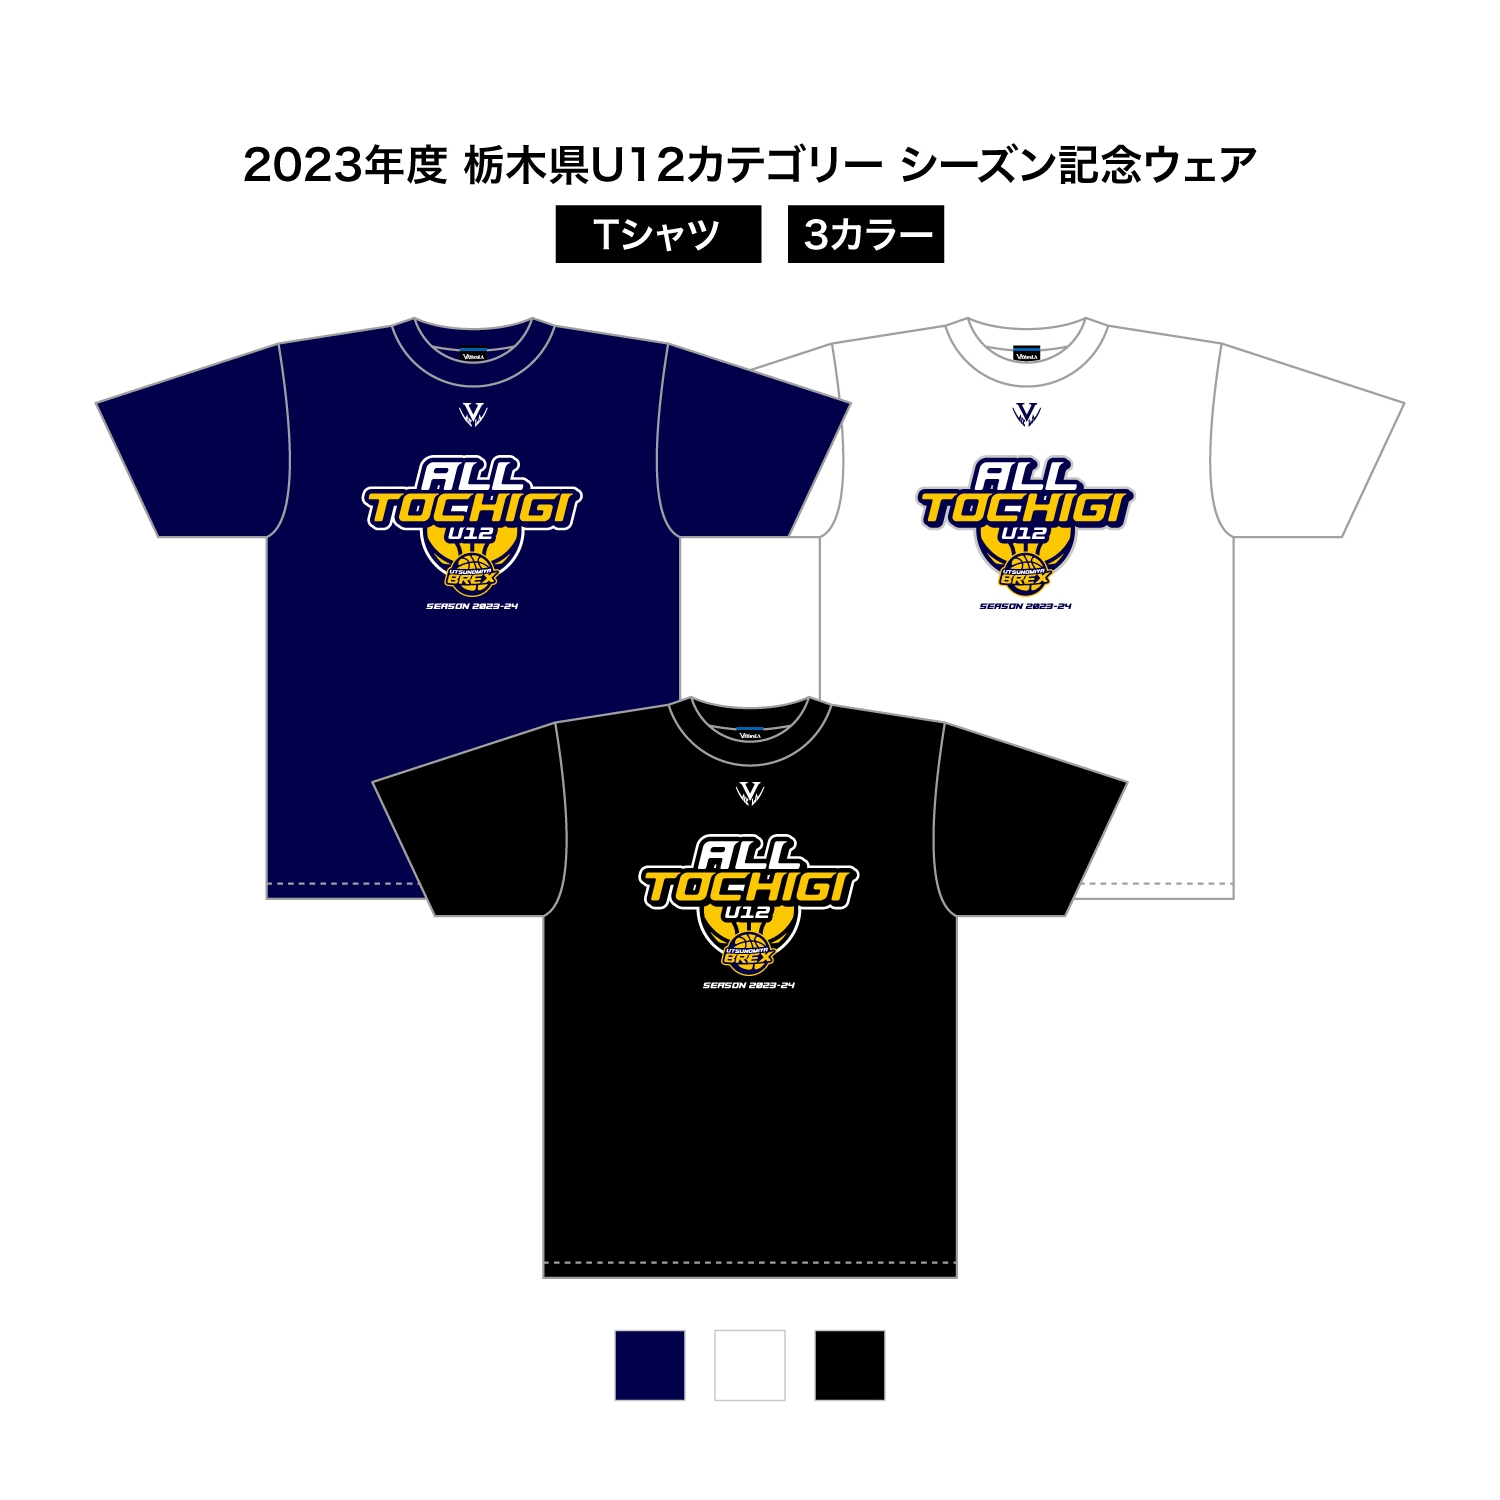 2023 栃木県U12 シーズン記念ウェア ドライTシャツ